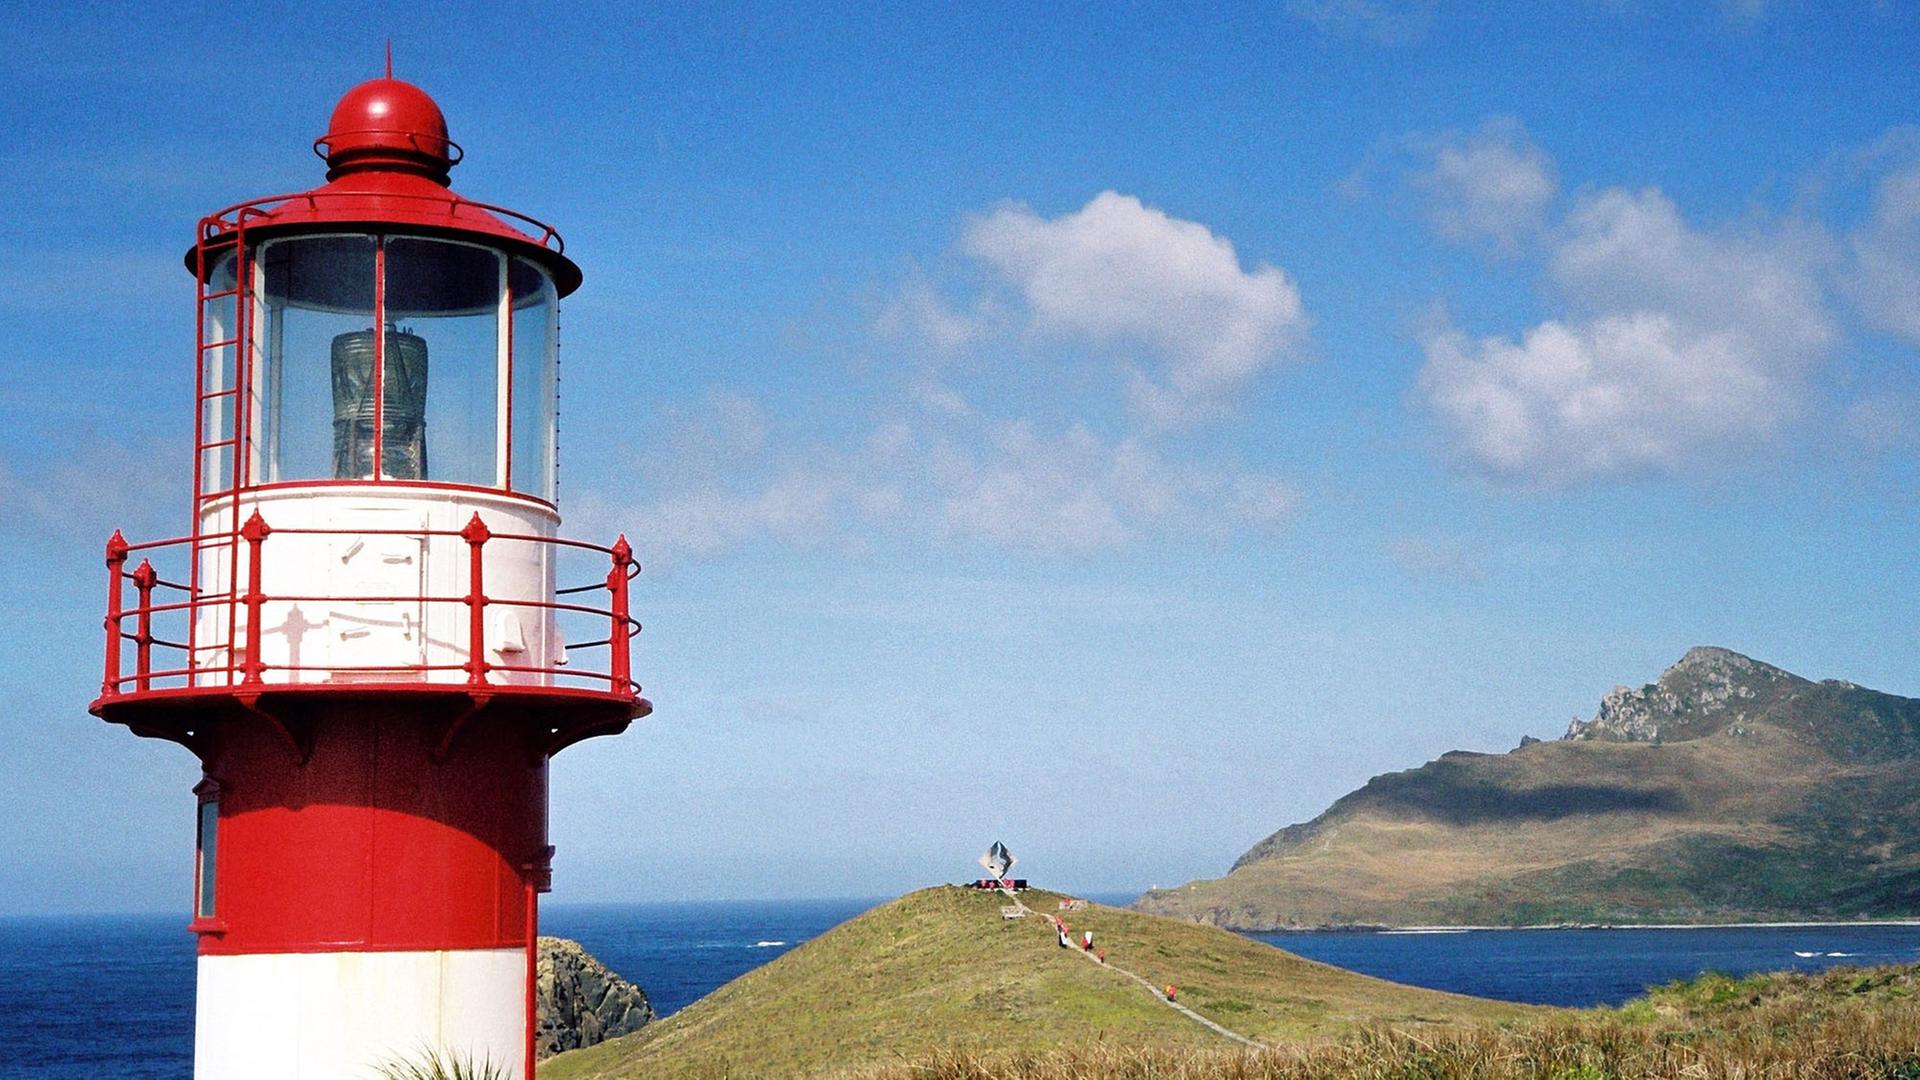 Leuchtturm und die felsige Küste von Kap Horn, der Südspitze Südamerikas. Das Felsenkap wurde 1616 von dem Holländer Schouten erstmals umsegelt und nach seiner Vaterstadt Hoorn benannt. Aufgenommen 2000